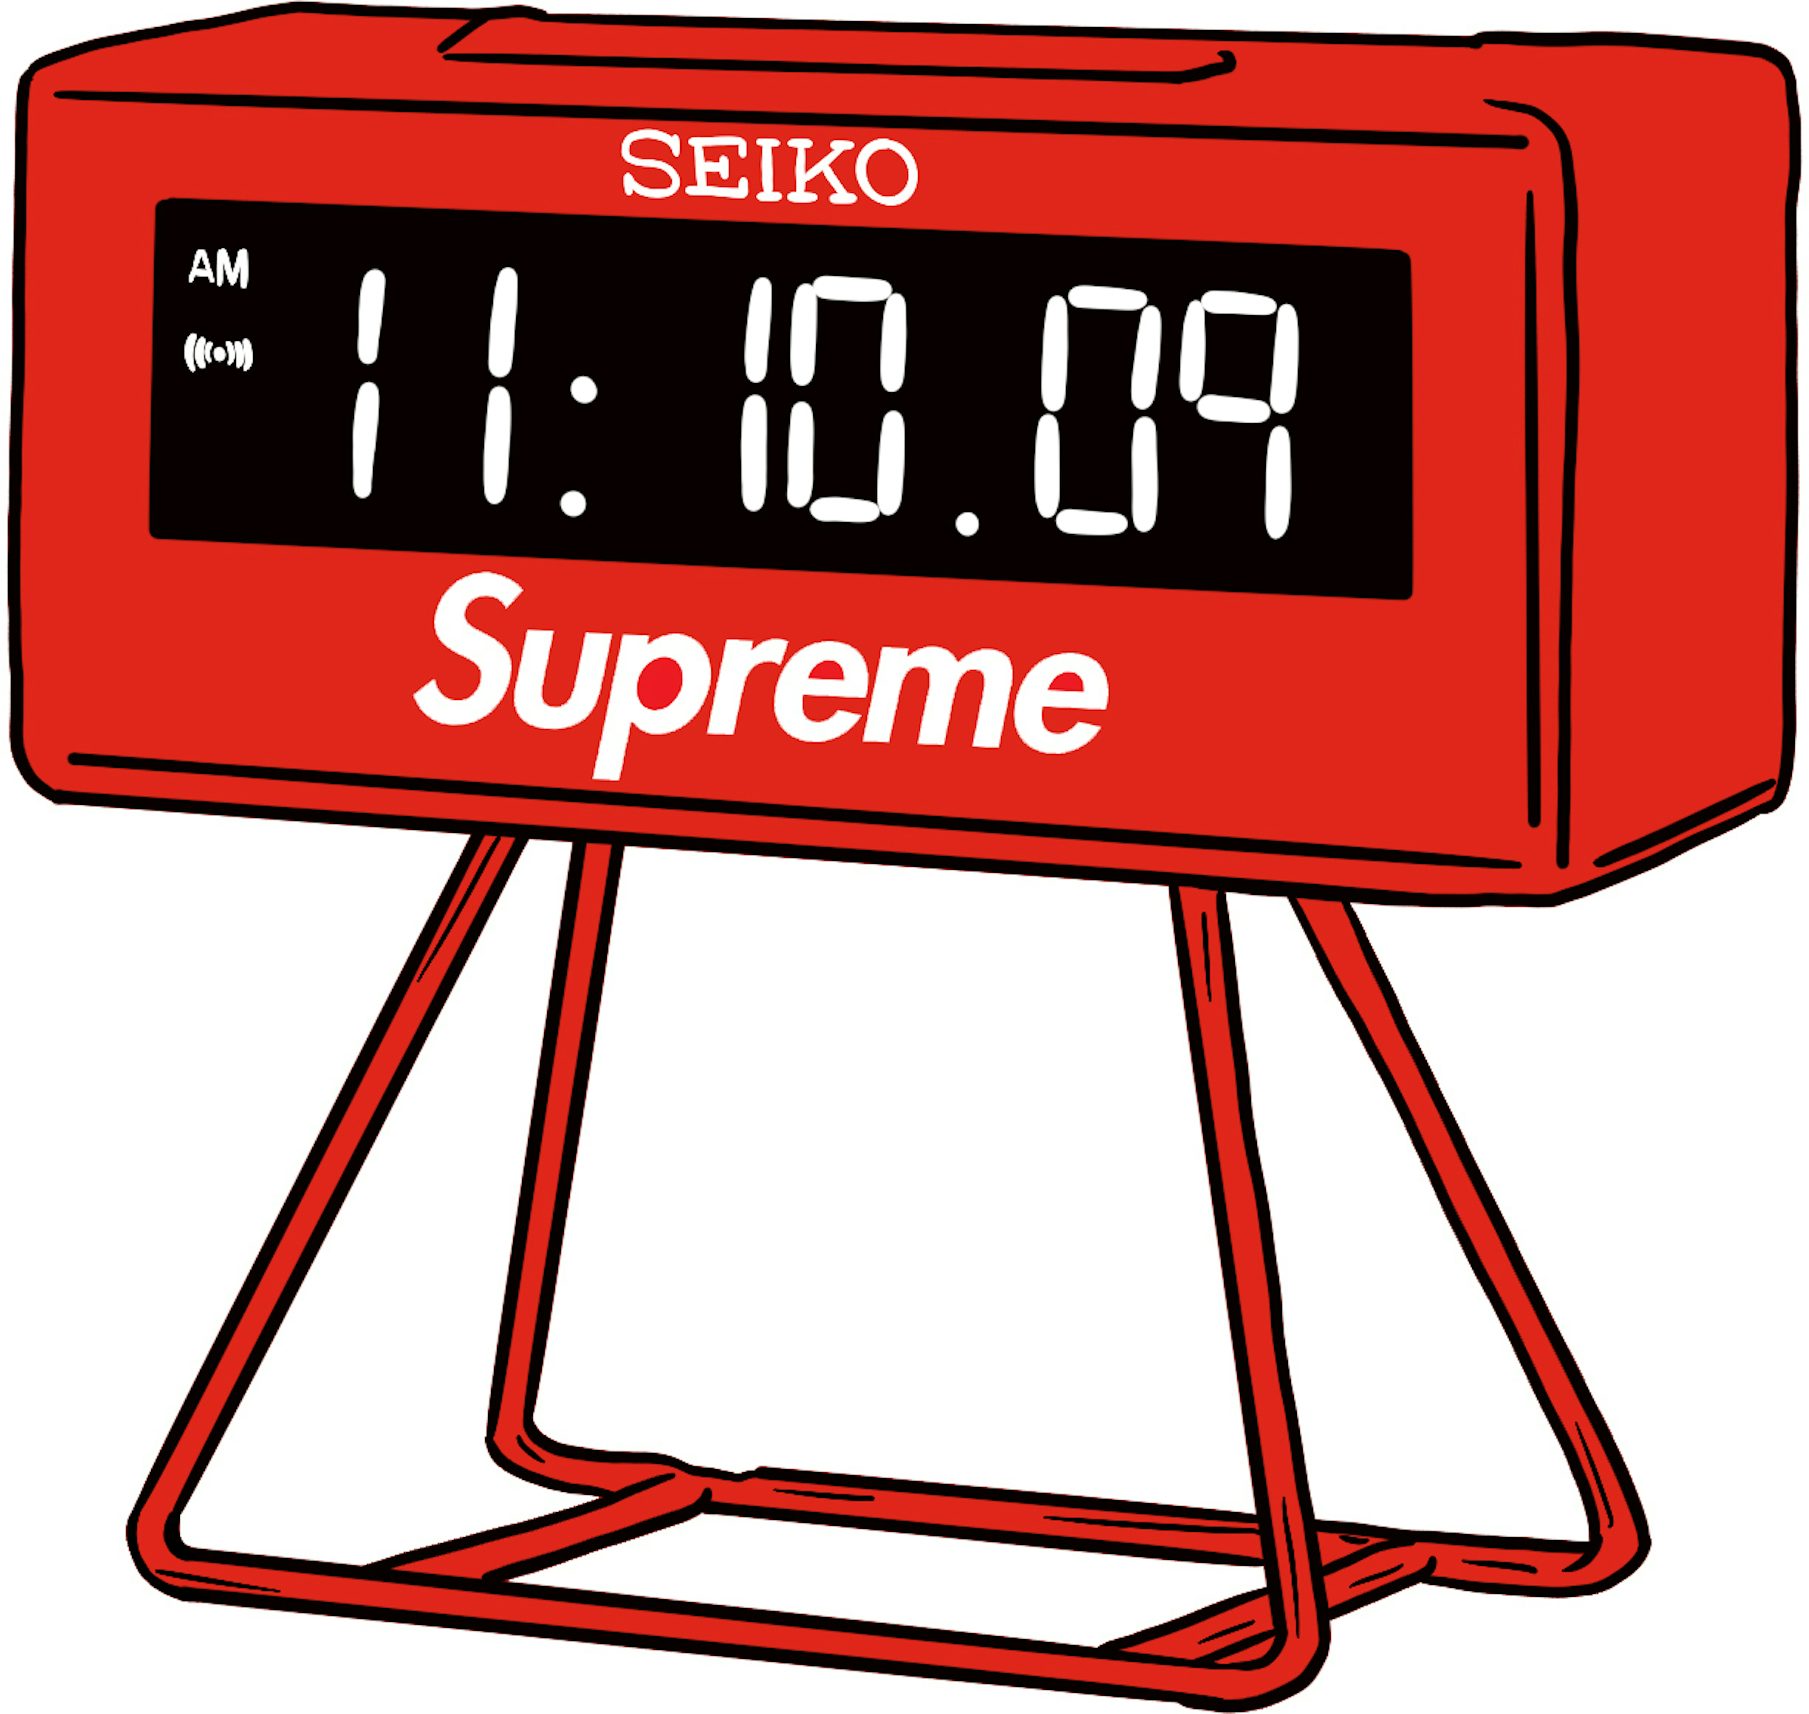 新品未使用購入Supreme Seiko Marathon Clock シュプリーム セイコー